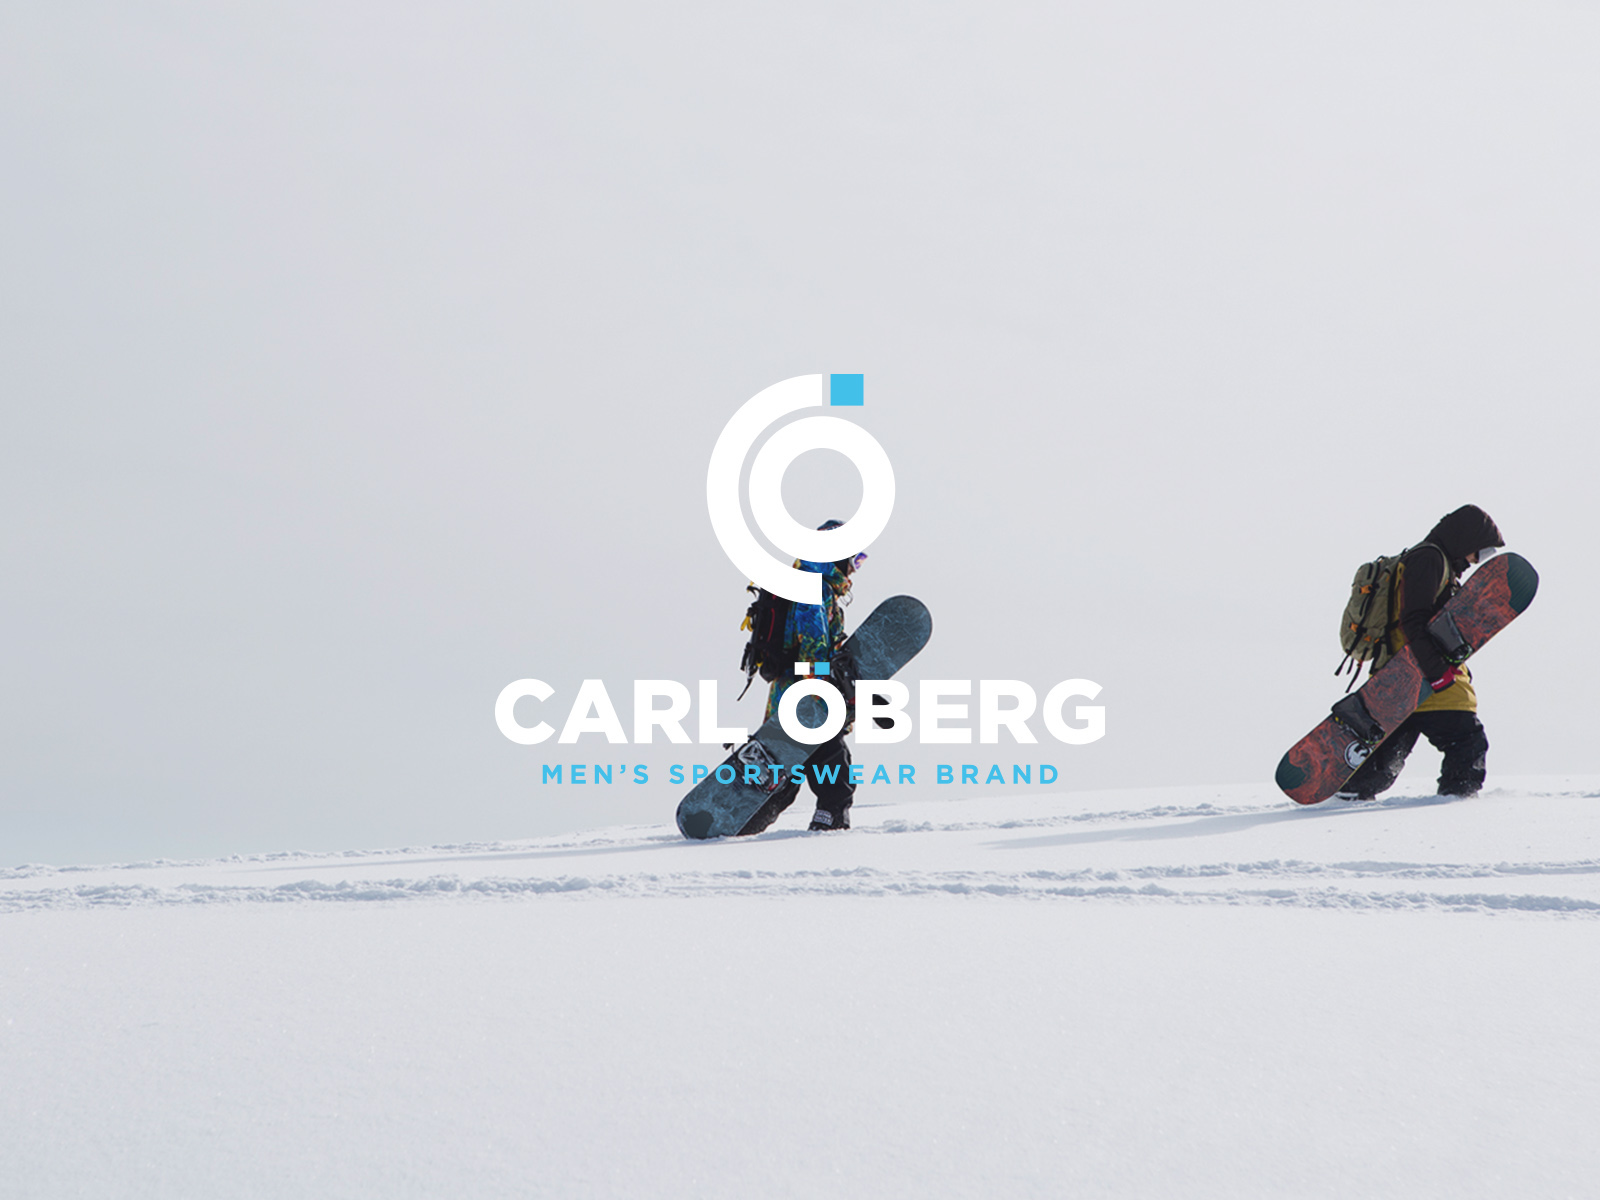 运动品牌Carl Öberg视觉形象设计